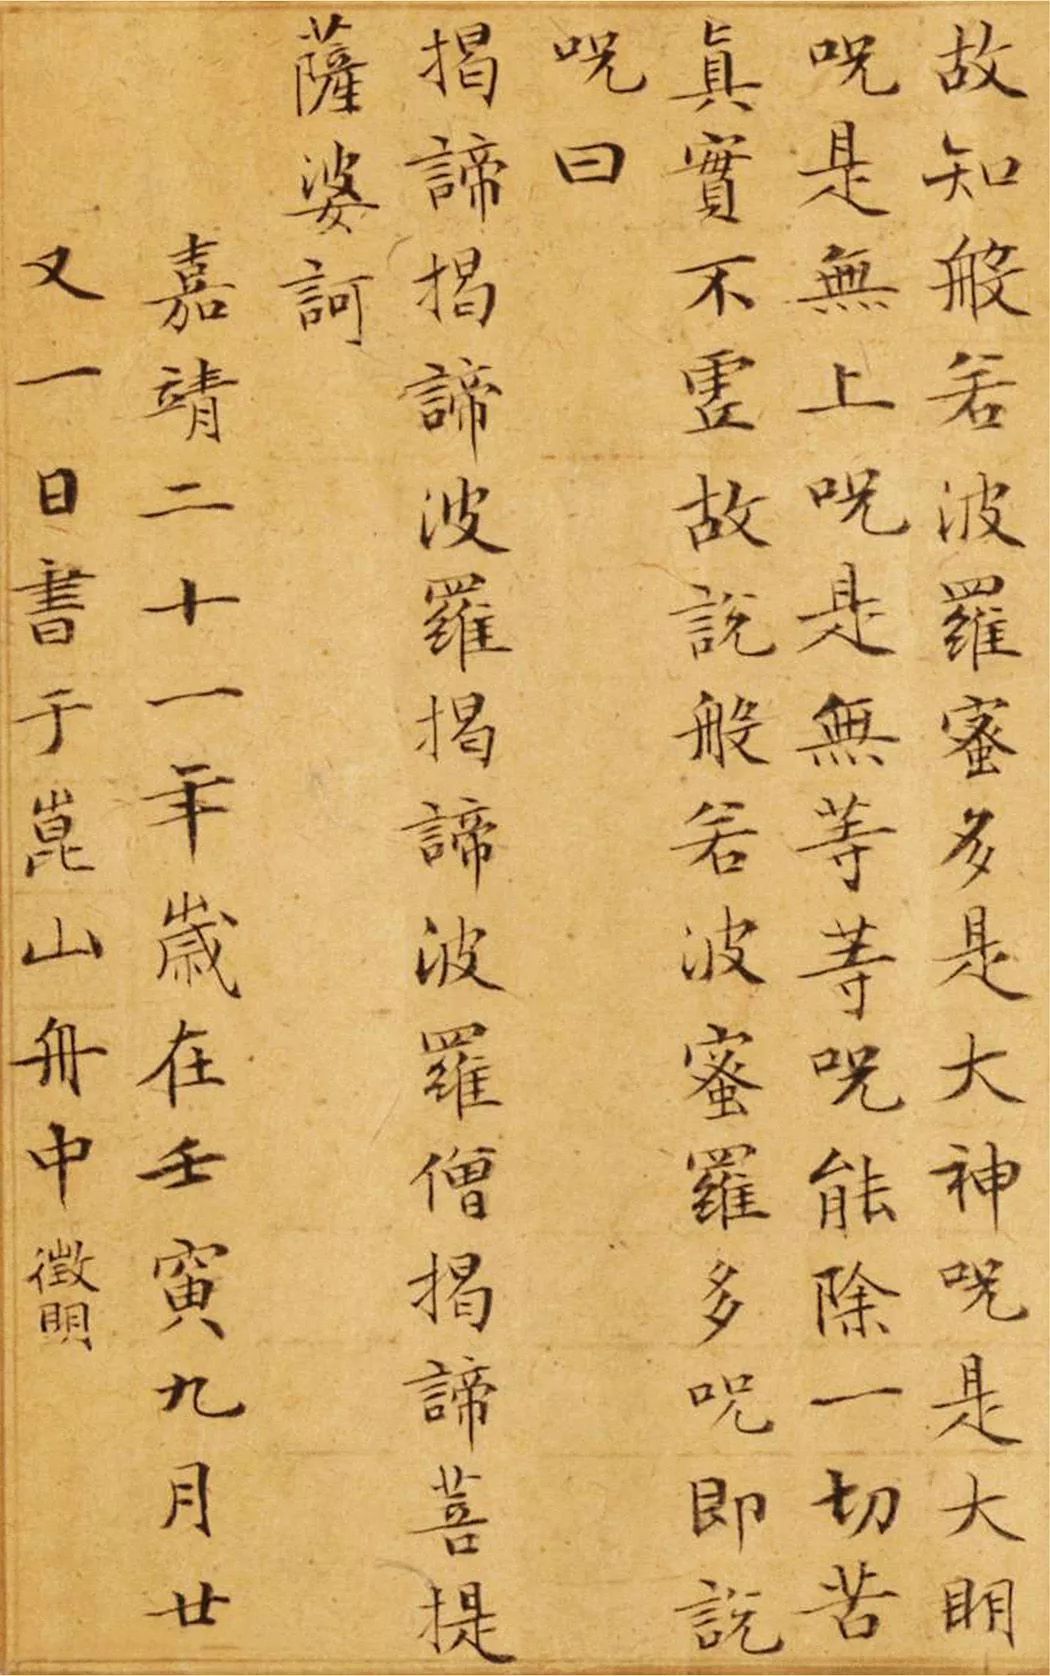 此幅小楷书法《心经》是在嘉靖二十一年壬寅(1542),文徵明时年七十三